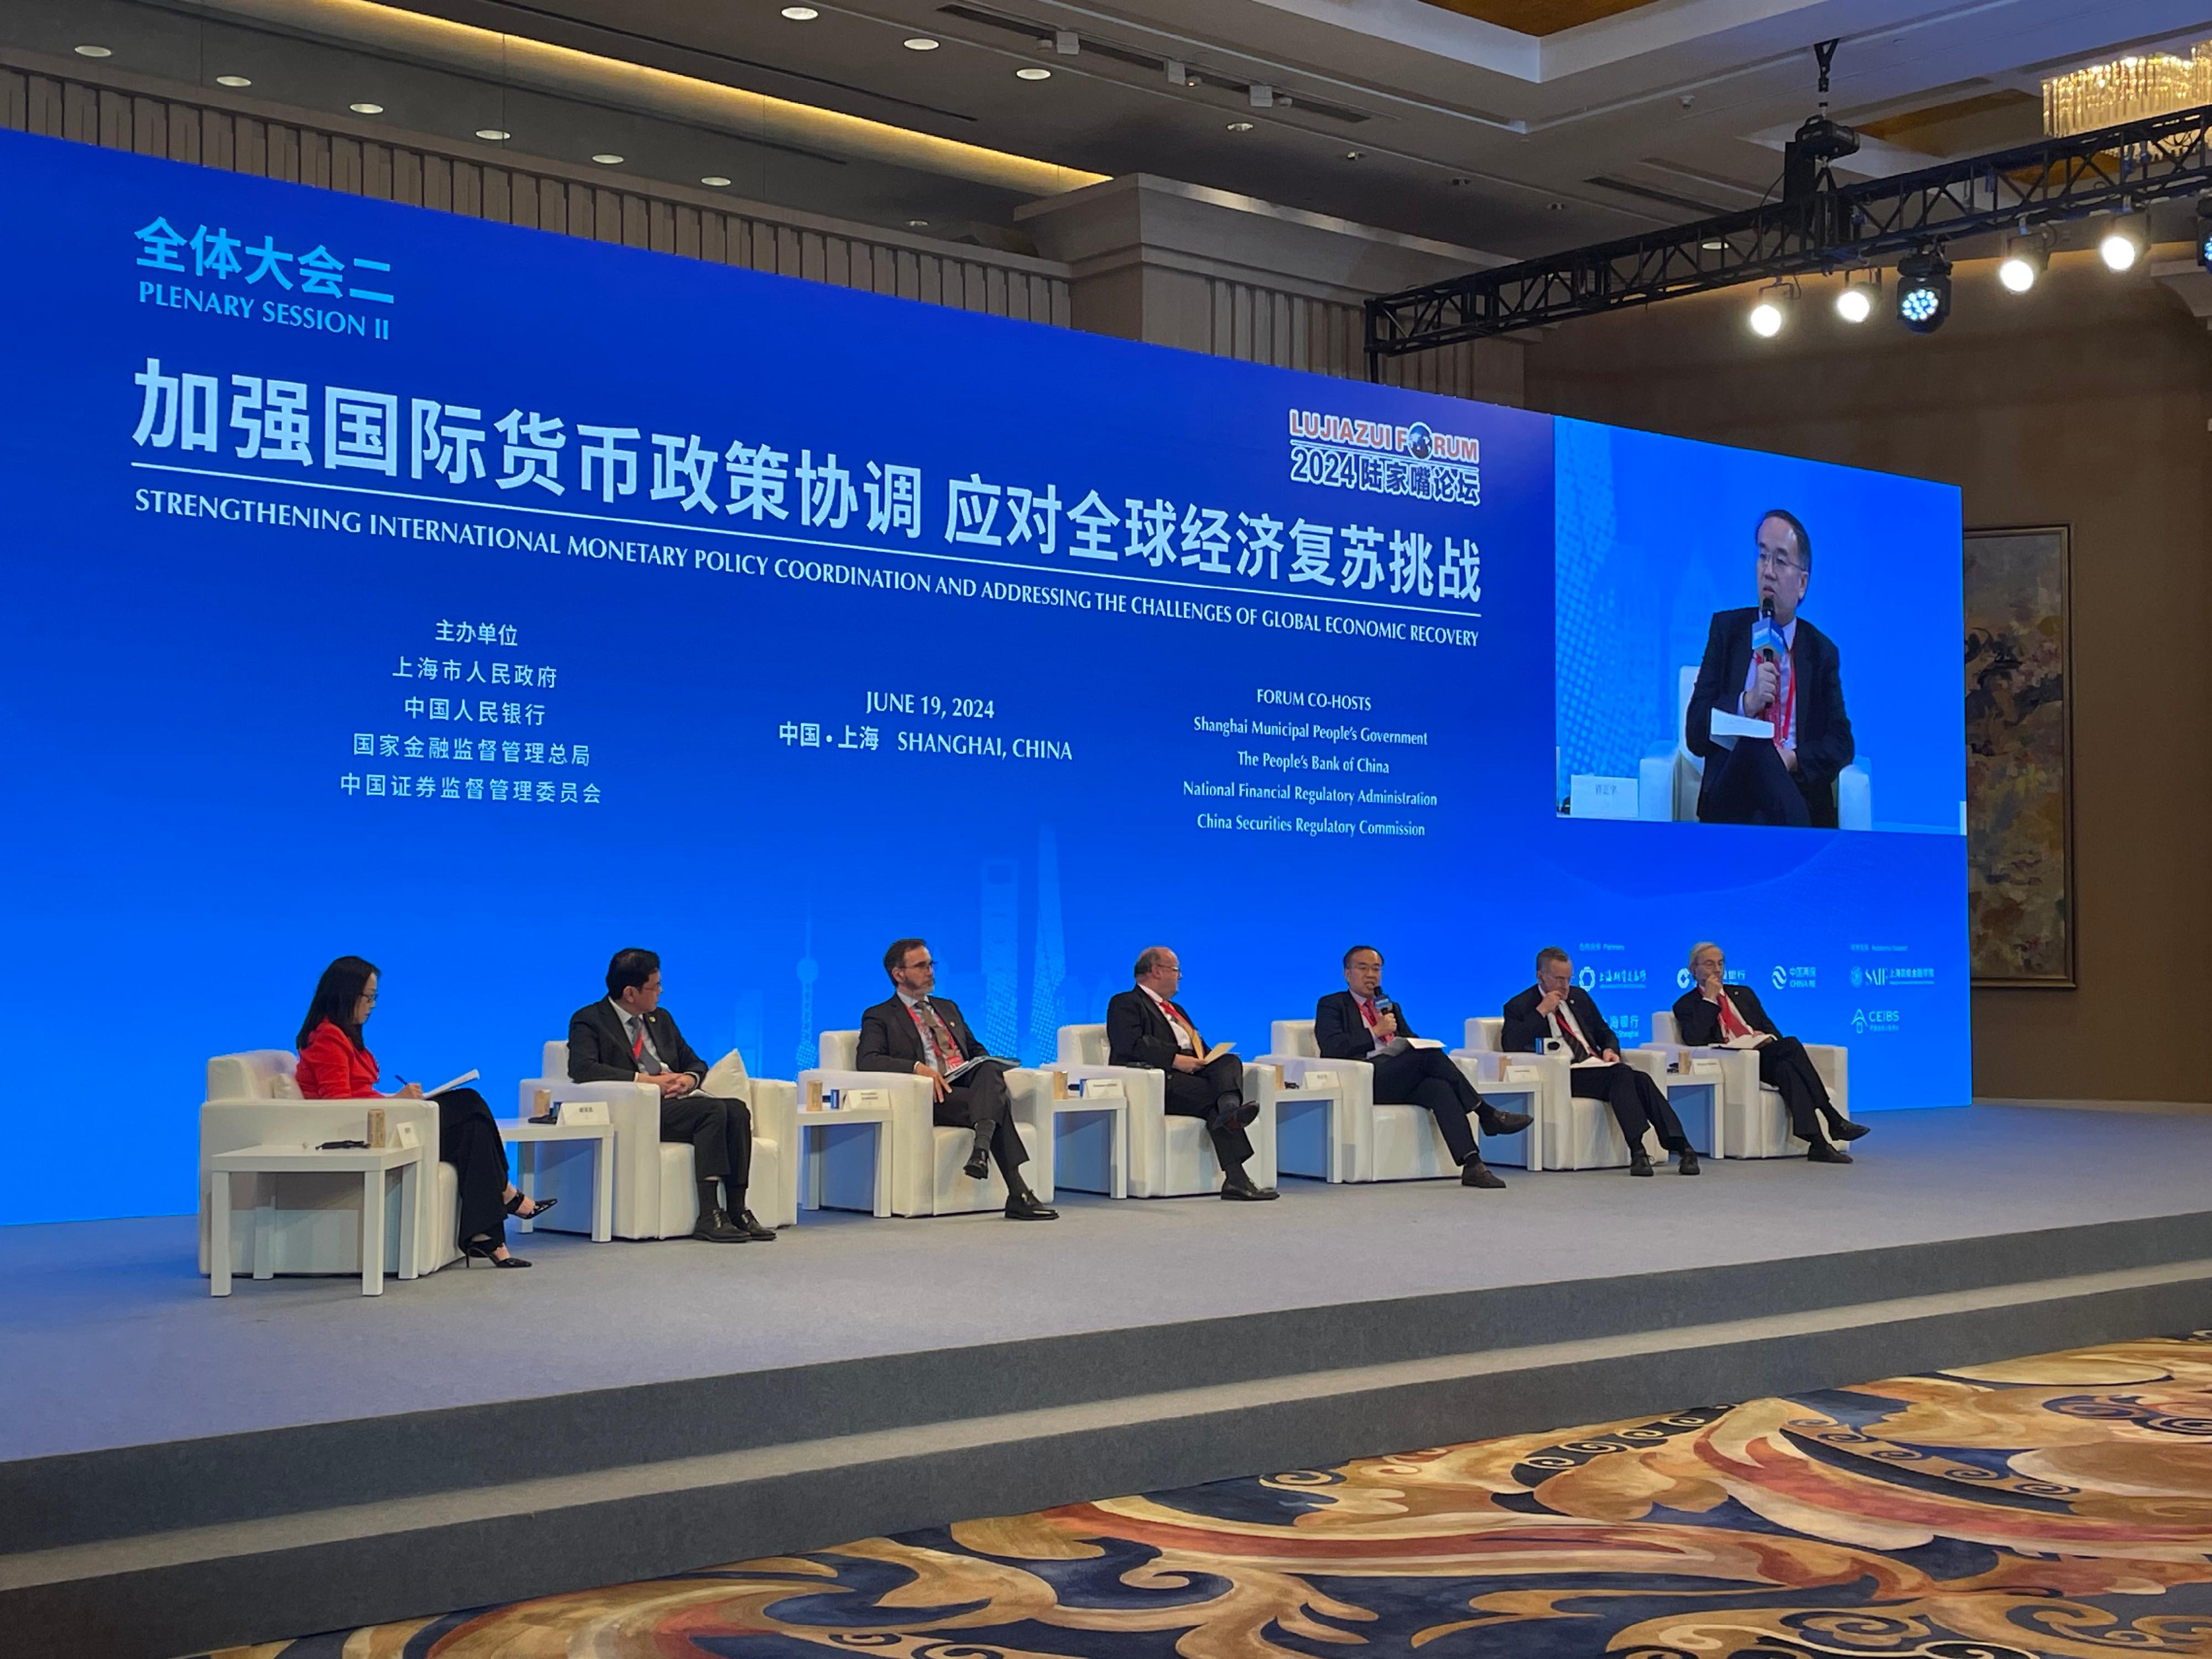 财经事务及库务局局长许正宇今日（六月十九日）在上海出席2024陆家嘴论坛。图示许正宇（右三）在全体大会二：「加强国际货币政策协调，应对全球经济复苏挑战」上发言。

